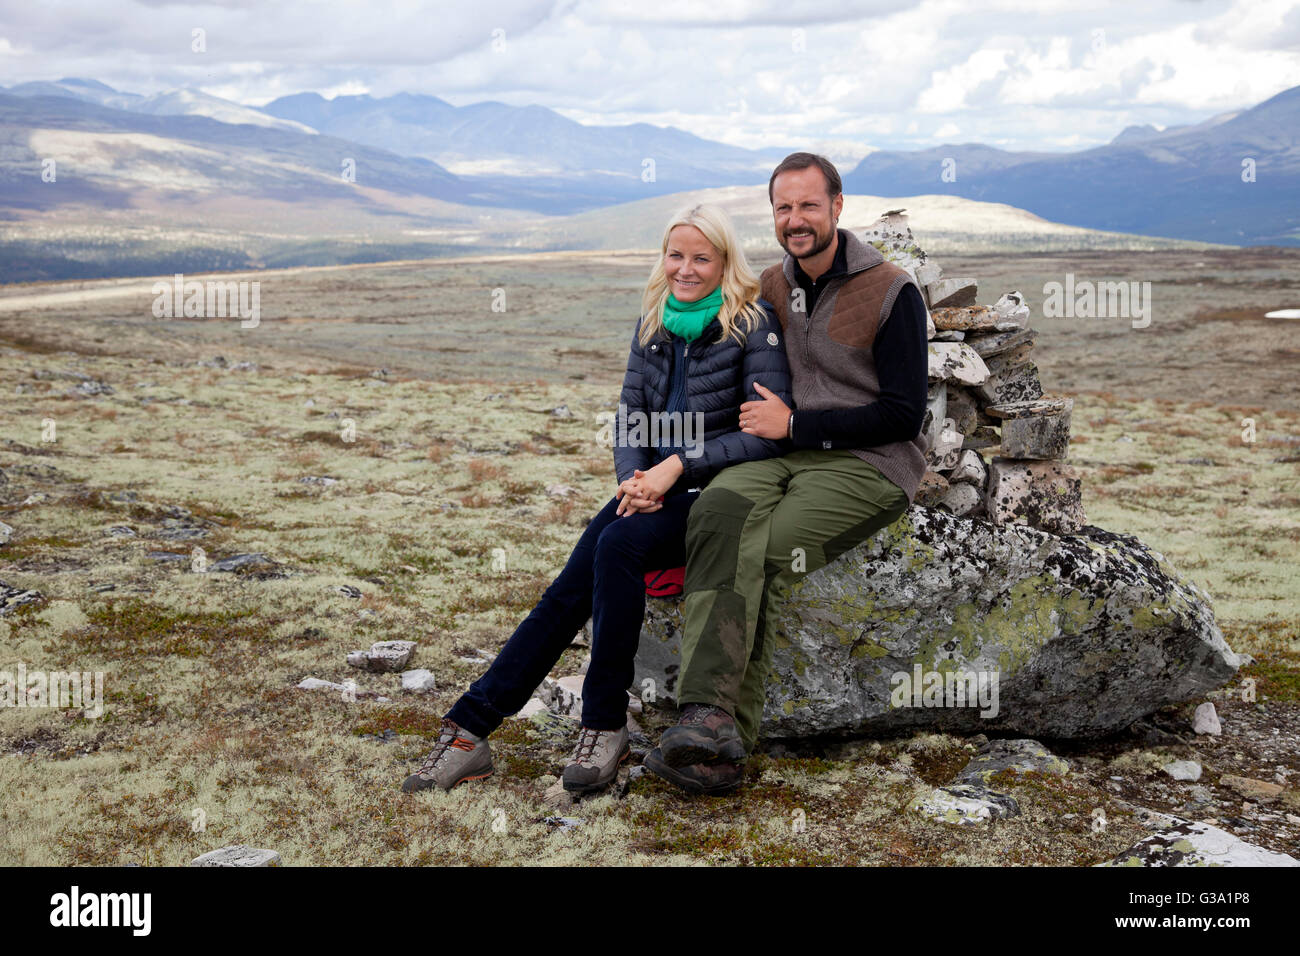 El príncipe heredero Haakon y la princesa heredera Mette-Marit de Noruega, durante una visita al condado de Hedmark en Noruega. Foto de stock